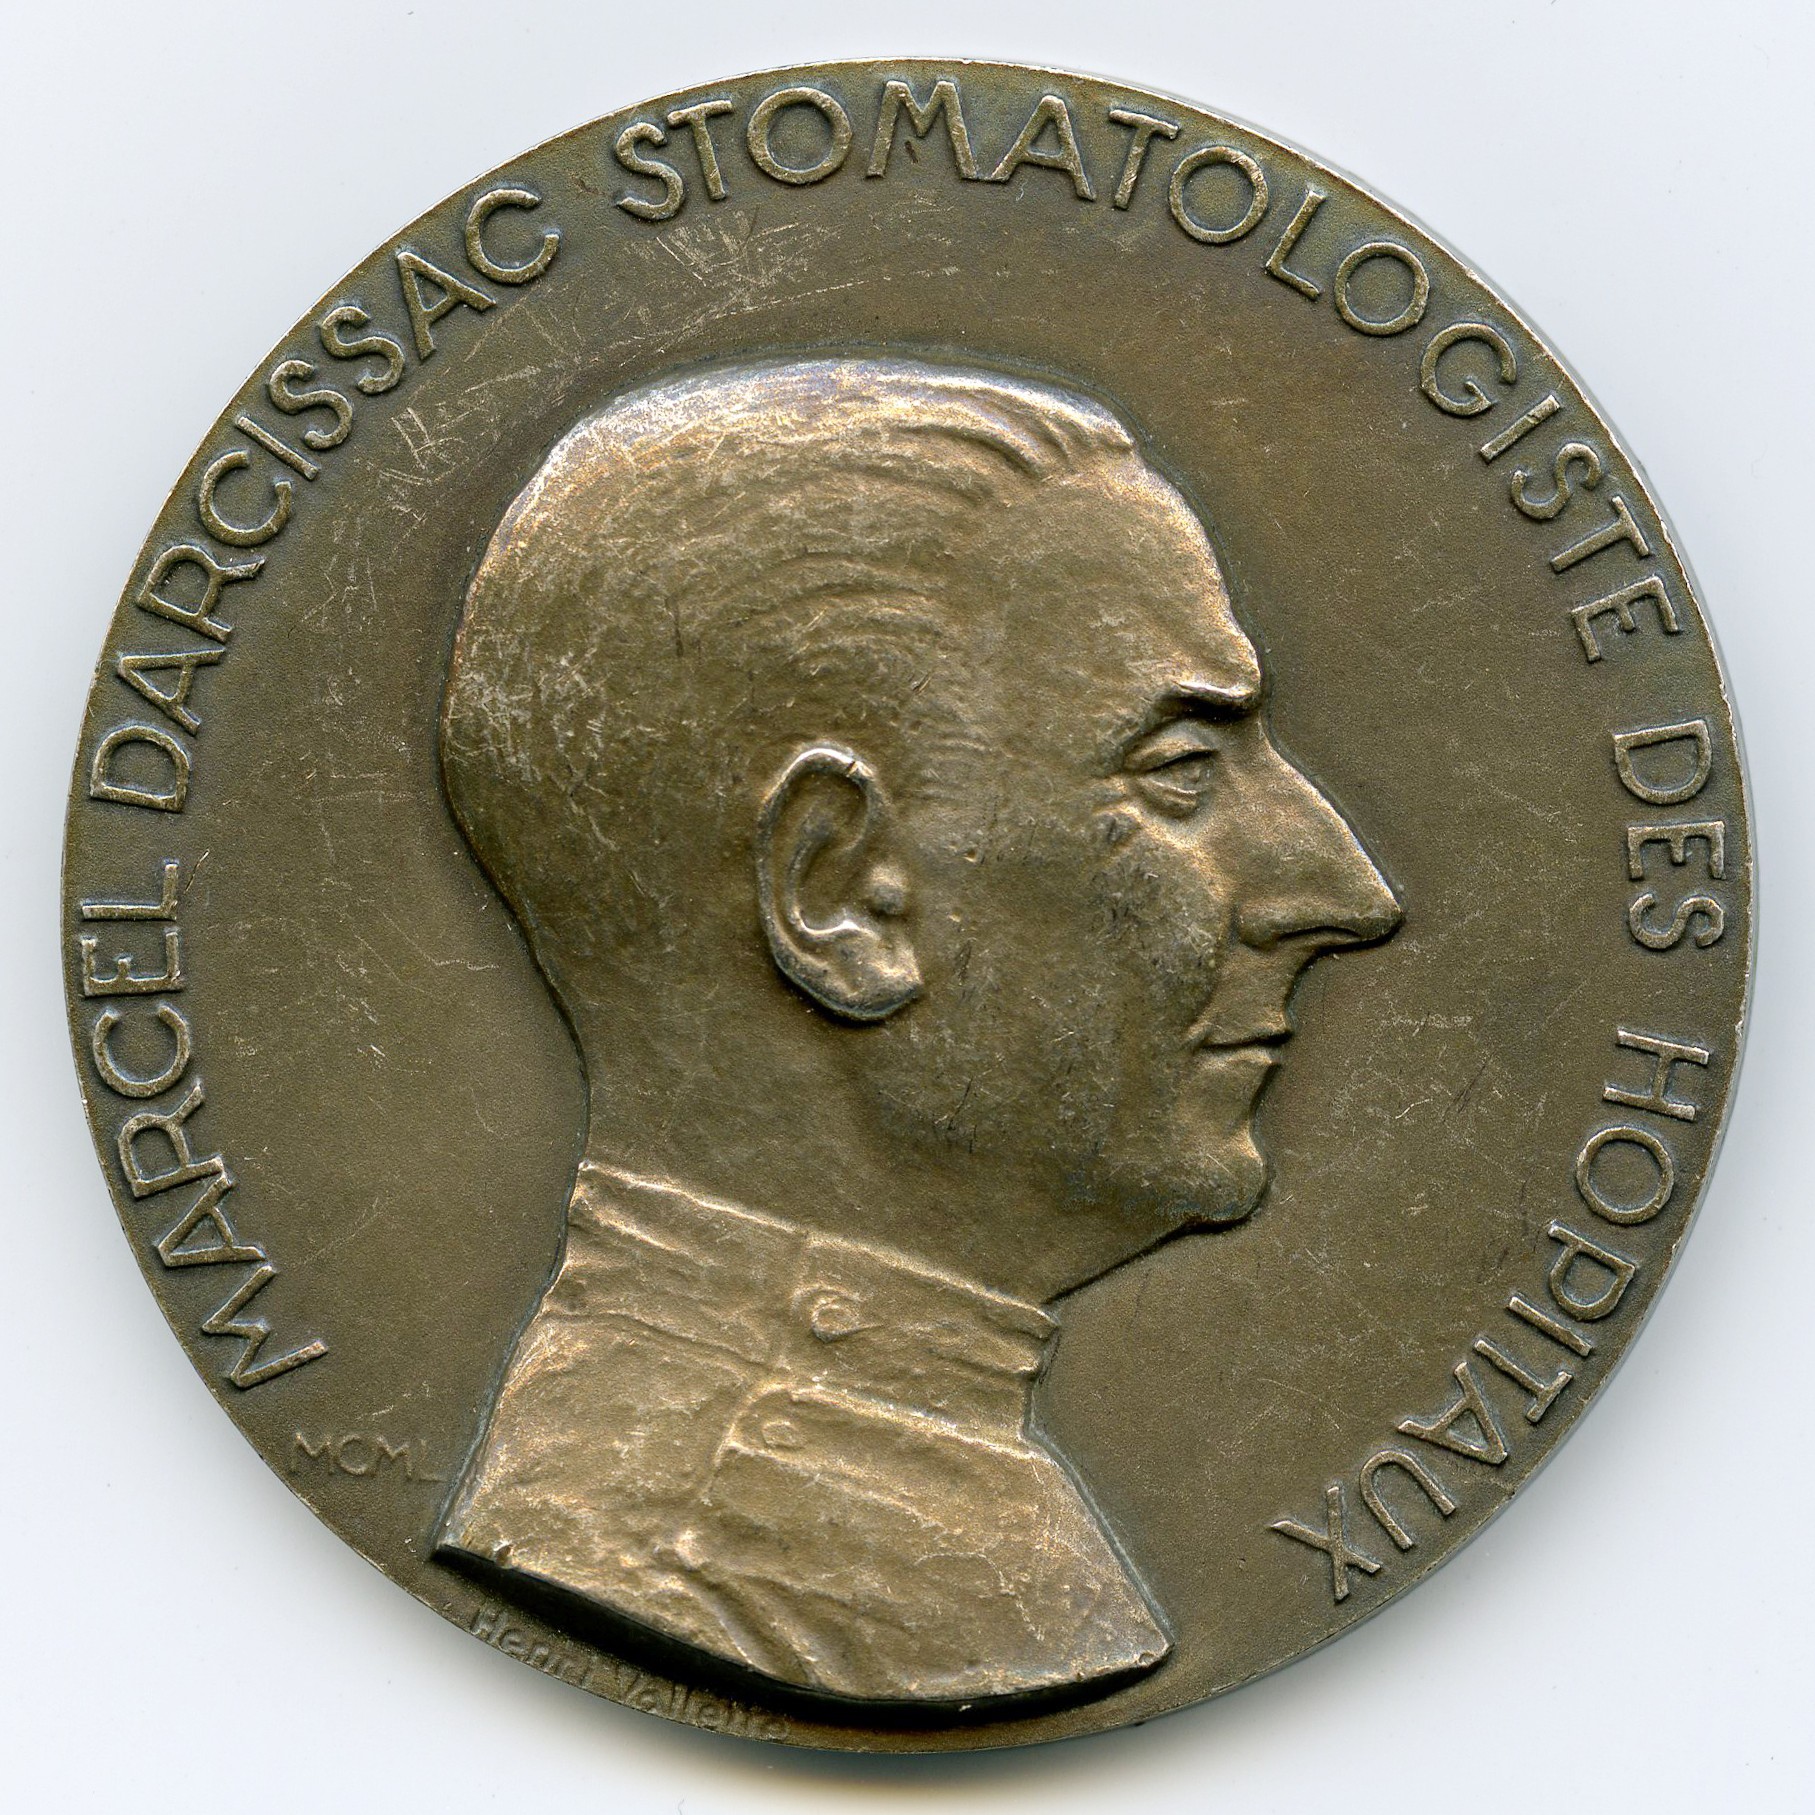 M Darcissac - Médaille Argent -1950 avers